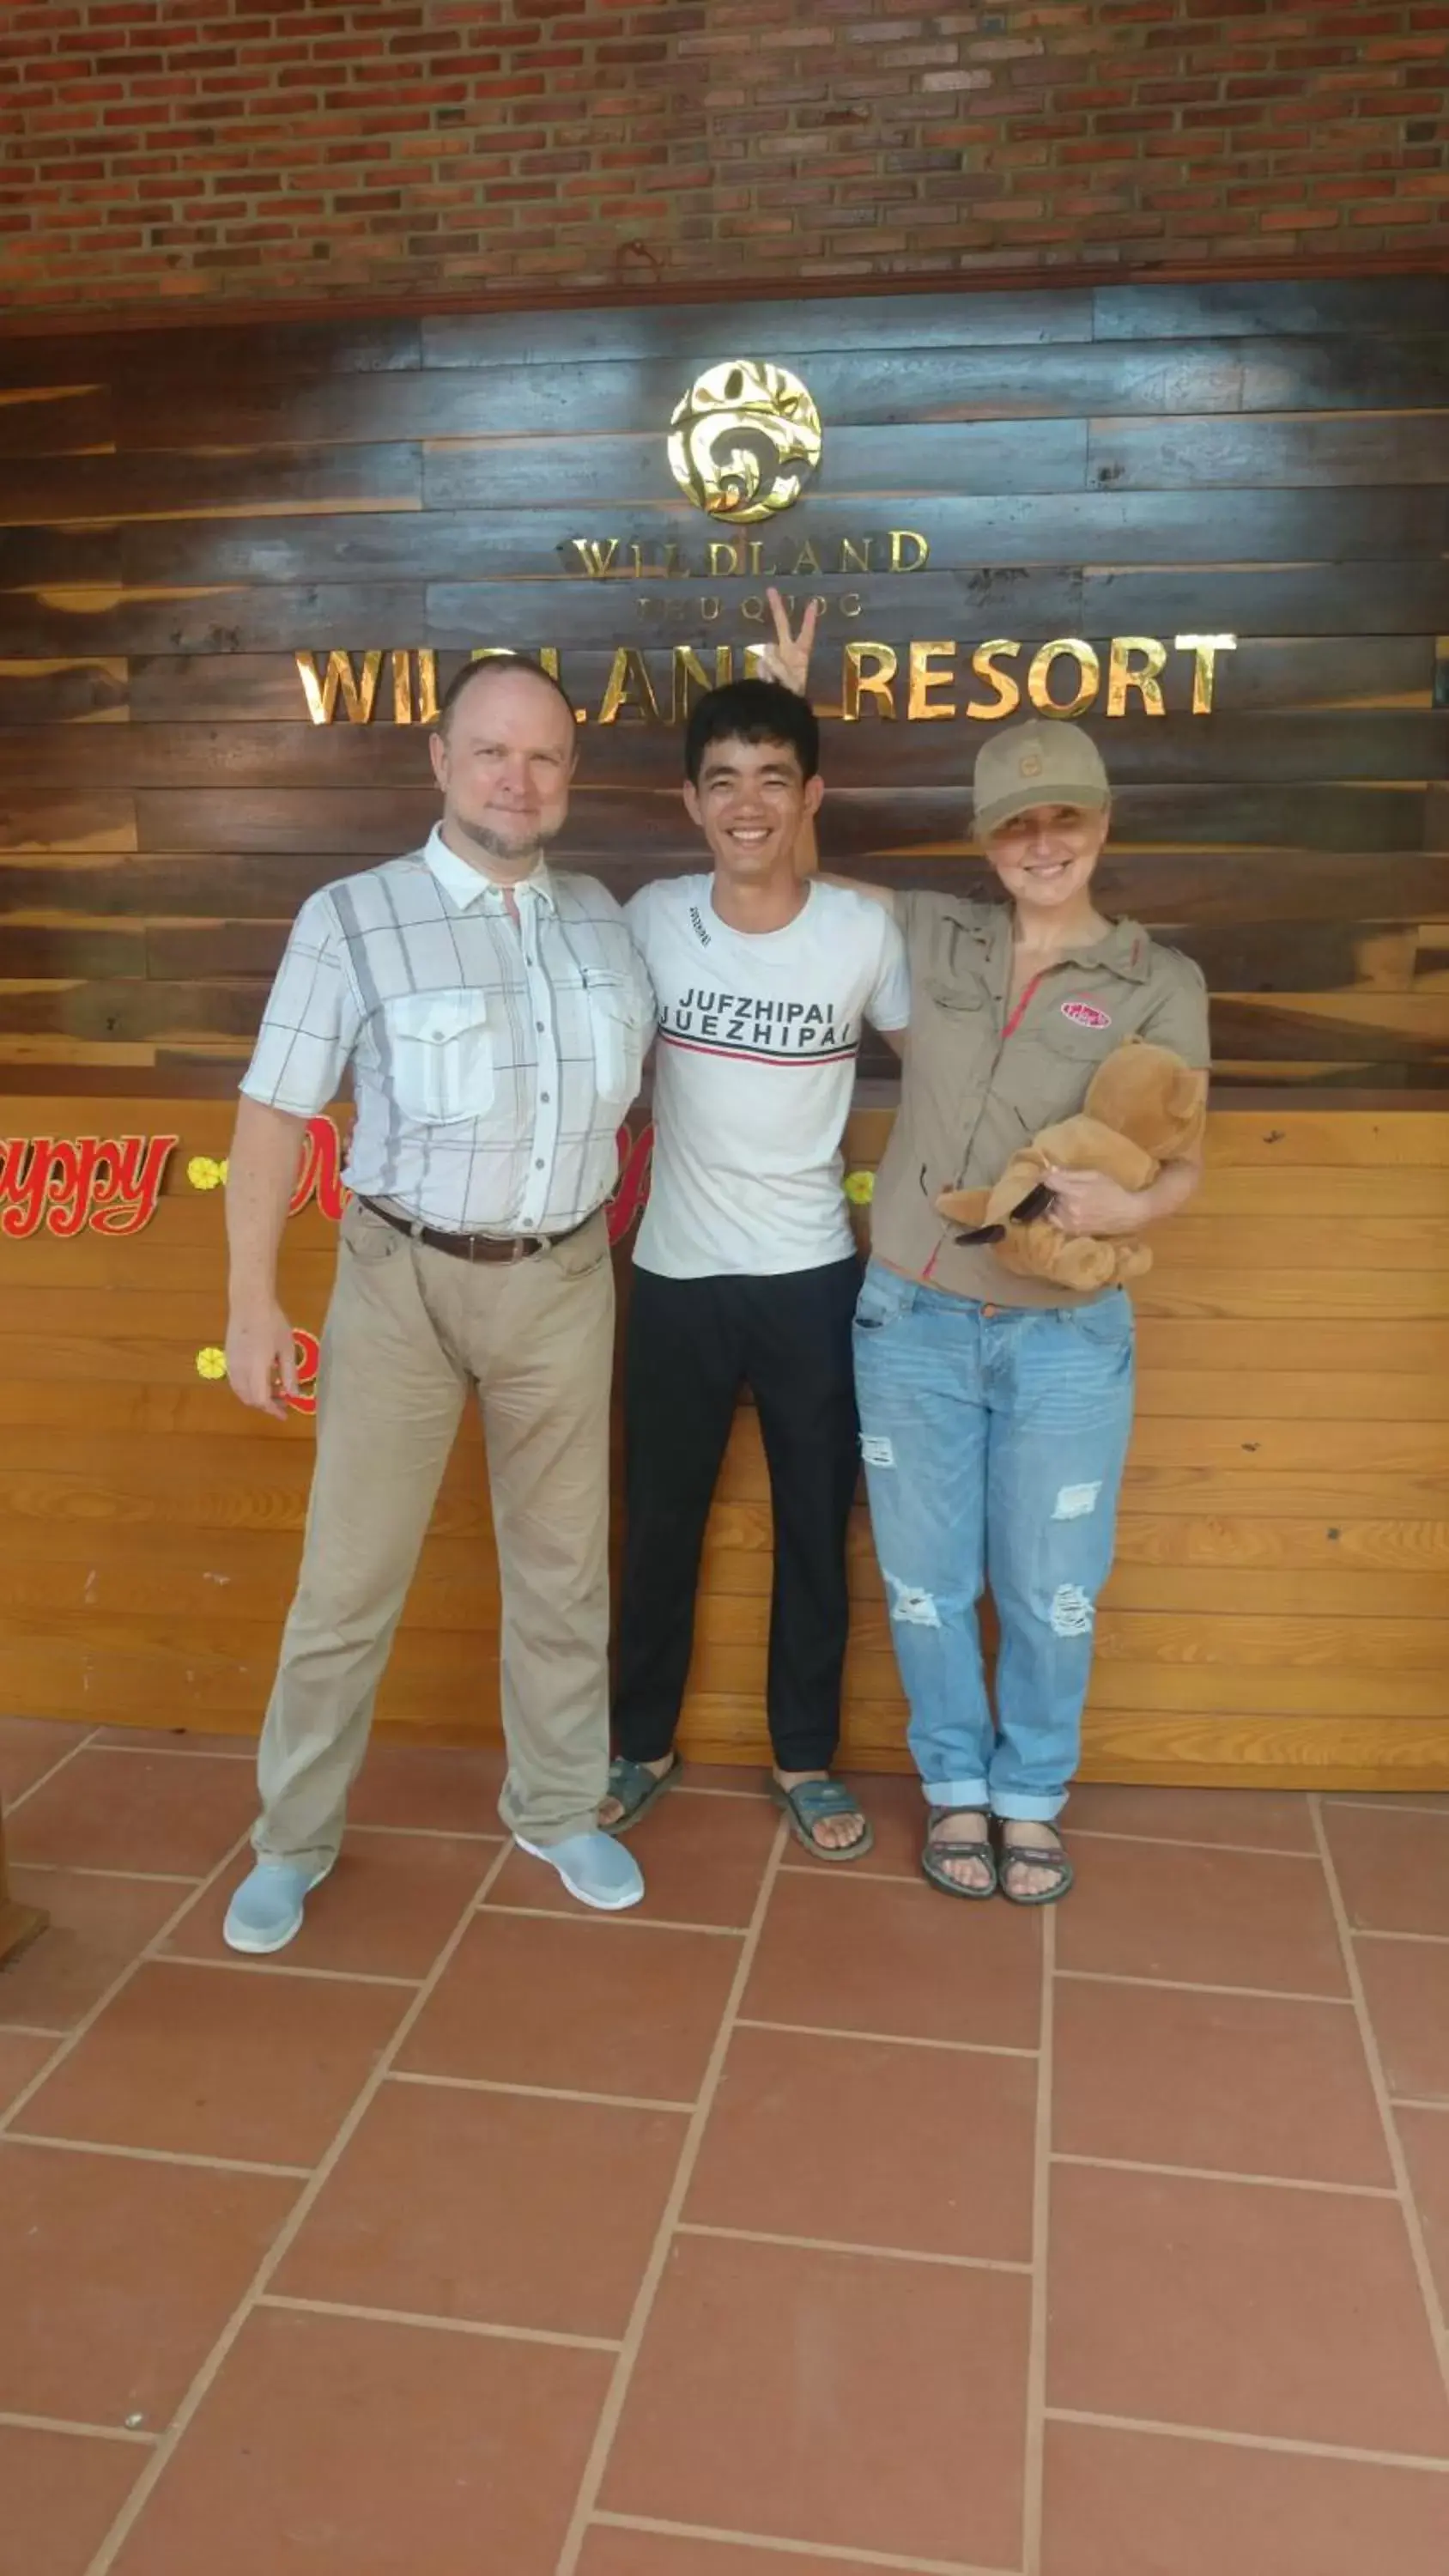 Staff in Wildland Resort